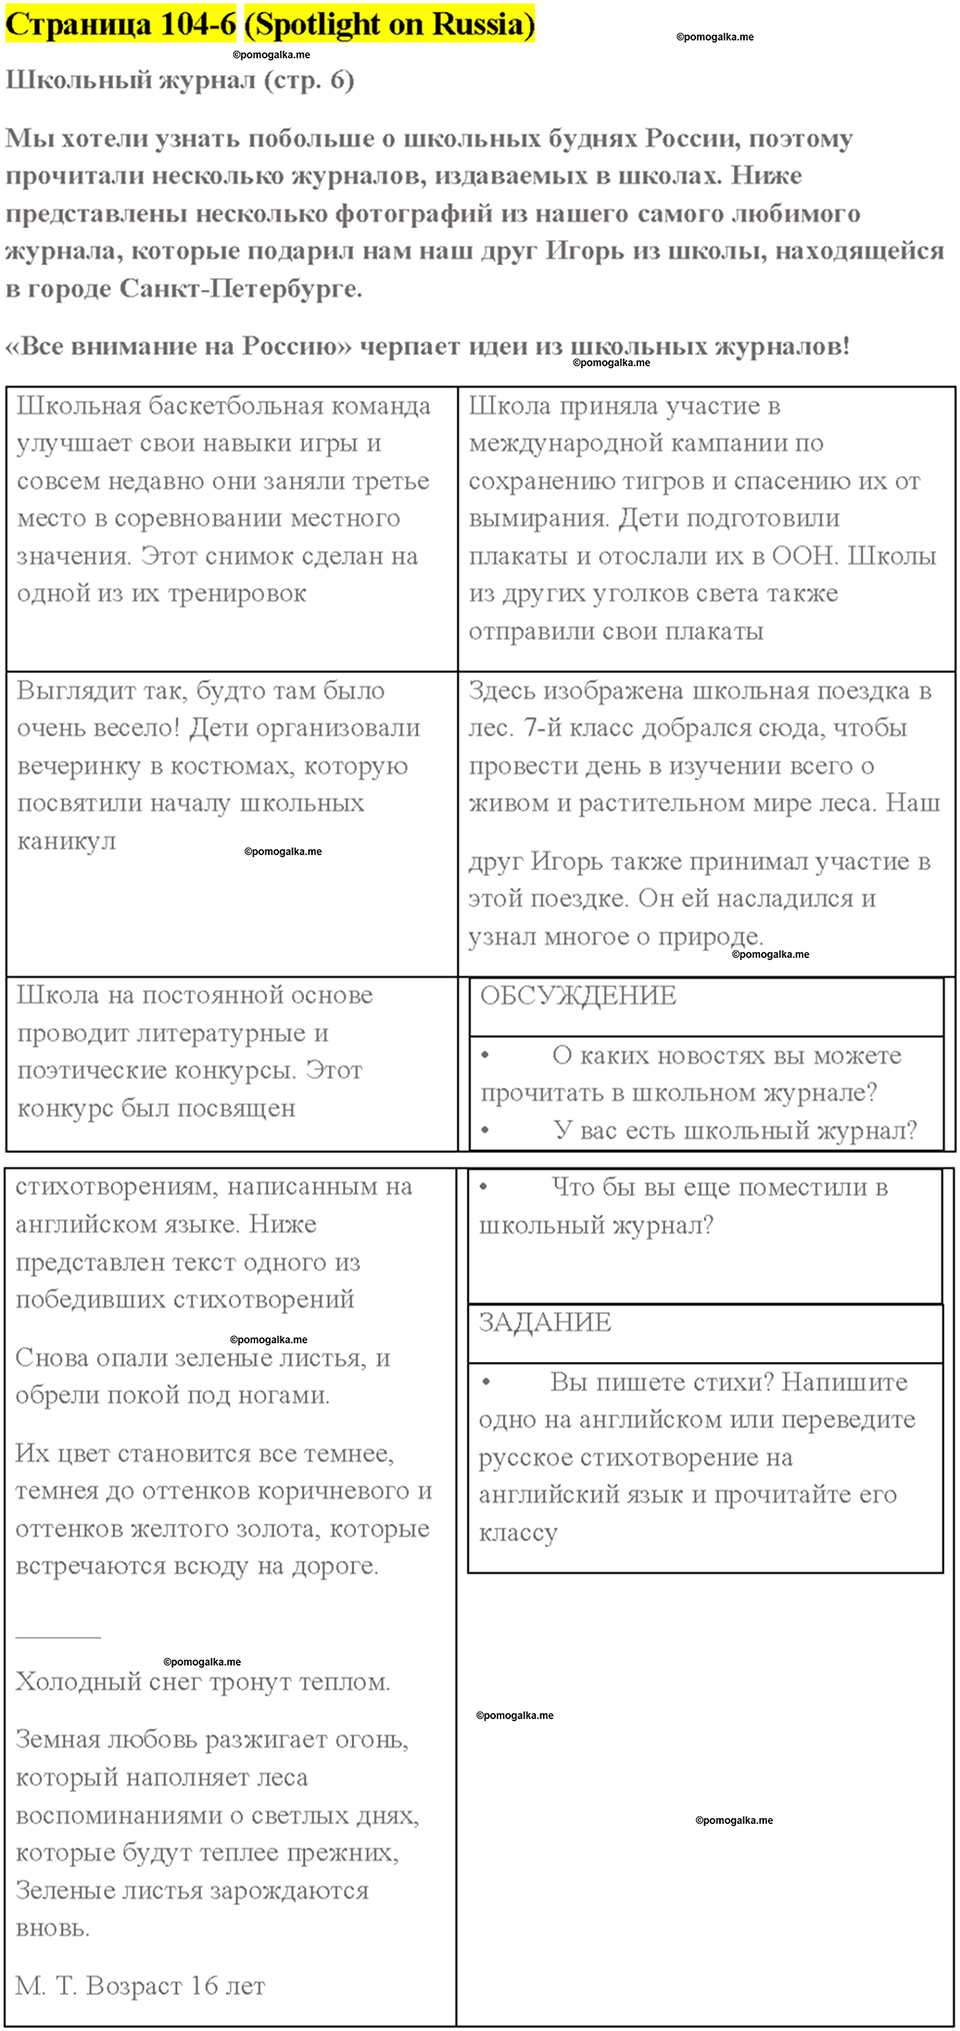 Spotlight on Russia страница 6 английский язык 7 класс Spotlight